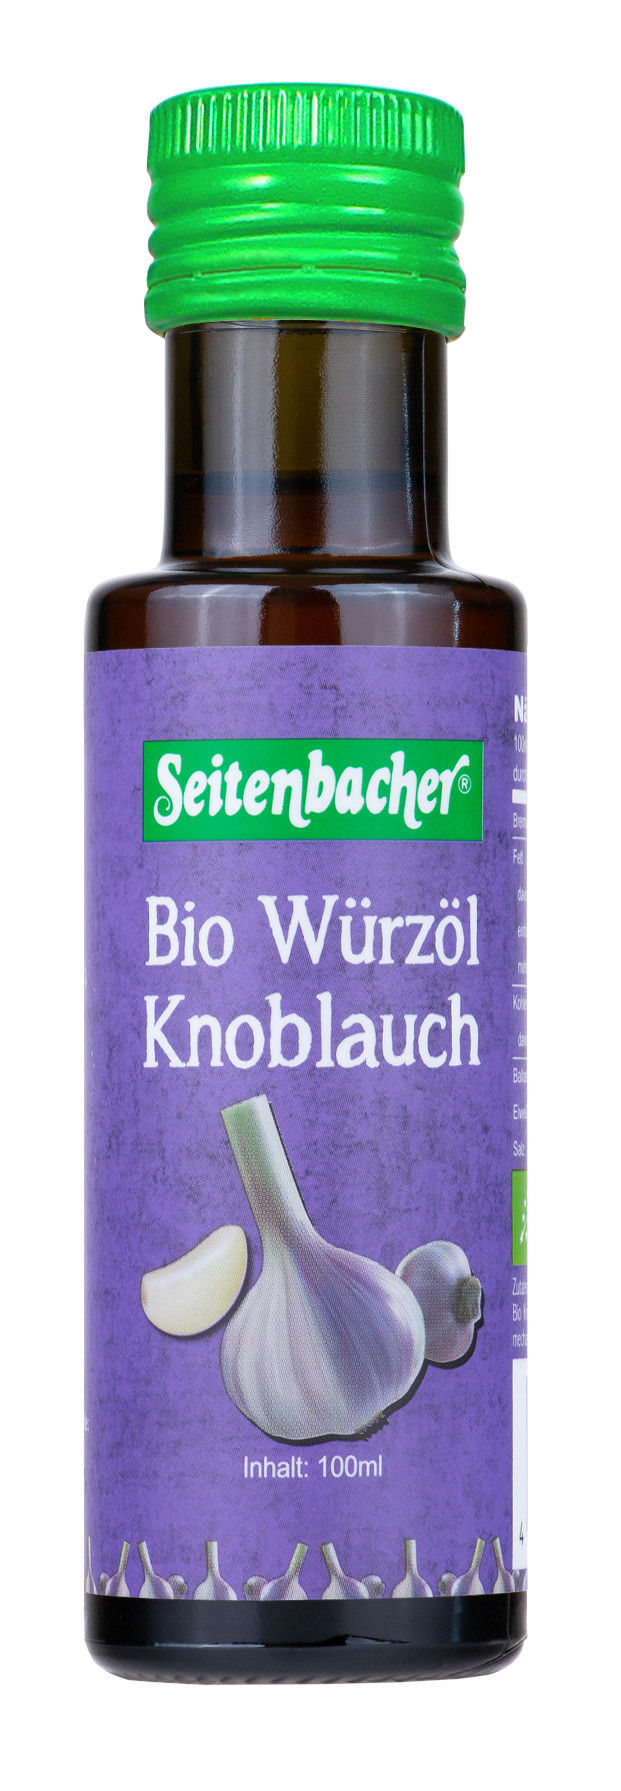 Bio Würzöl Knoblauch (Sonnenblumenöl)   